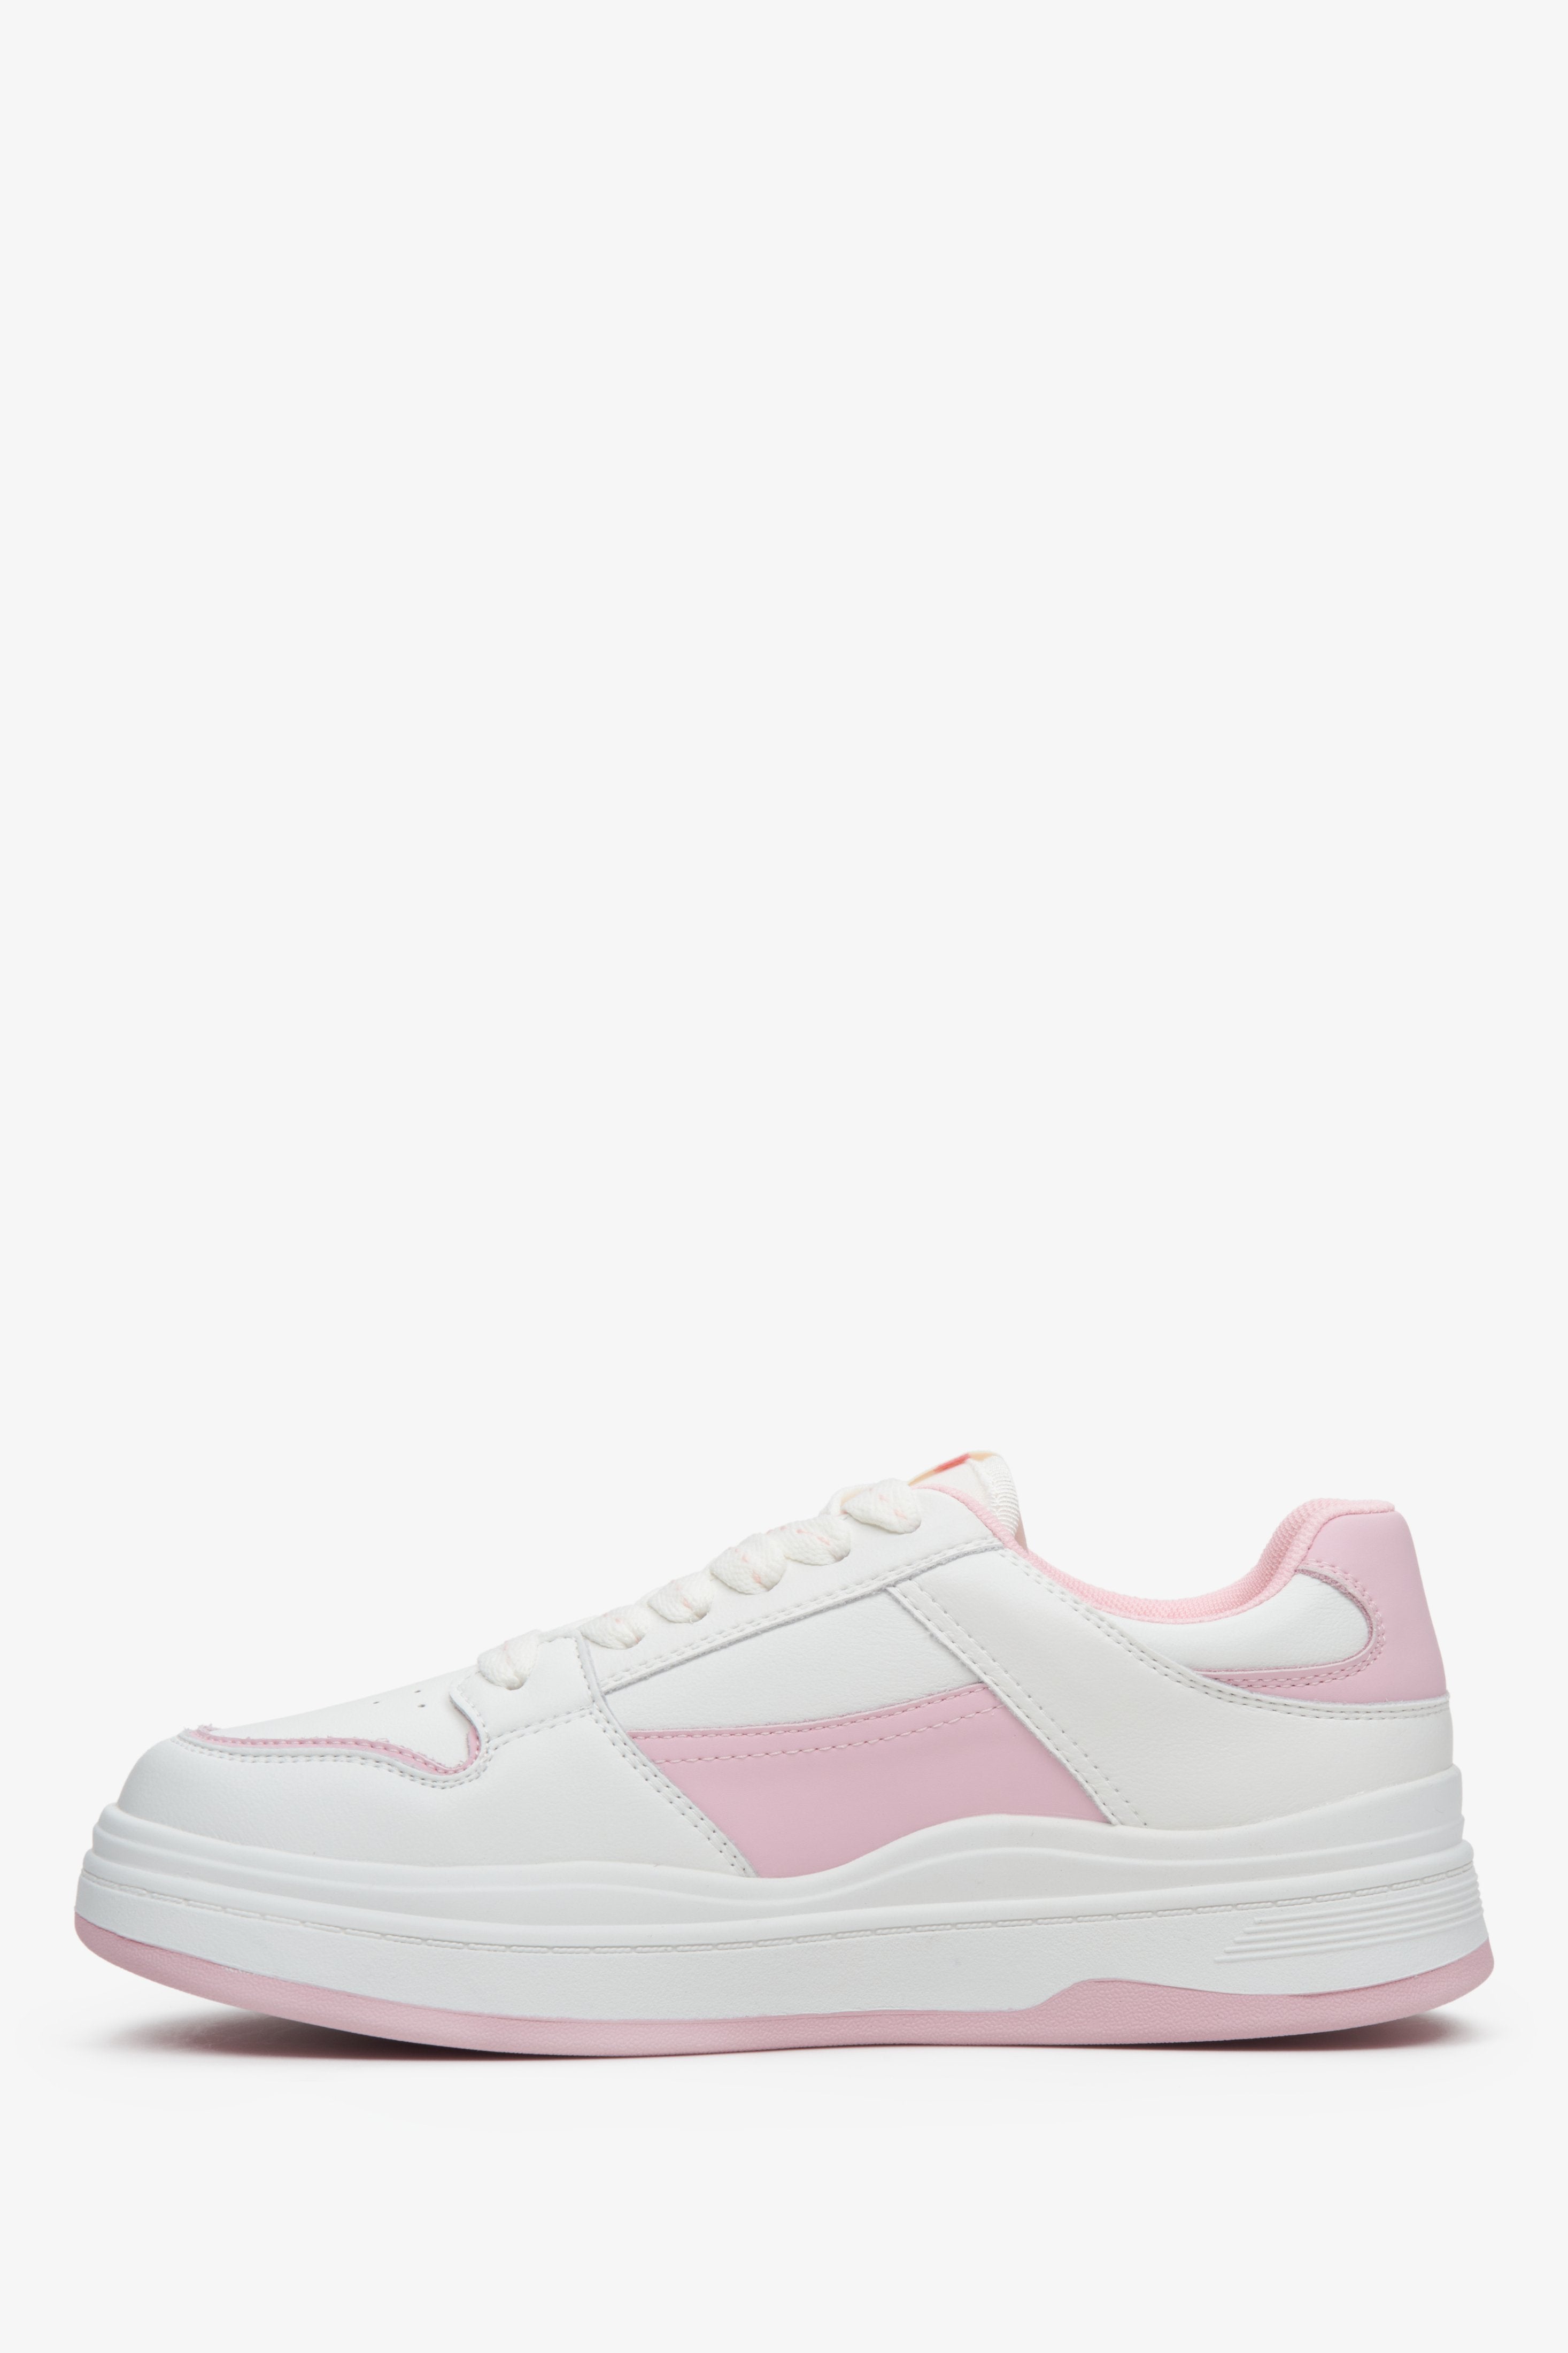 Stylowe, sportowe trampki damskie ze skóry naturalnej ES 8 w kolorze biało-różowym, profil buta.